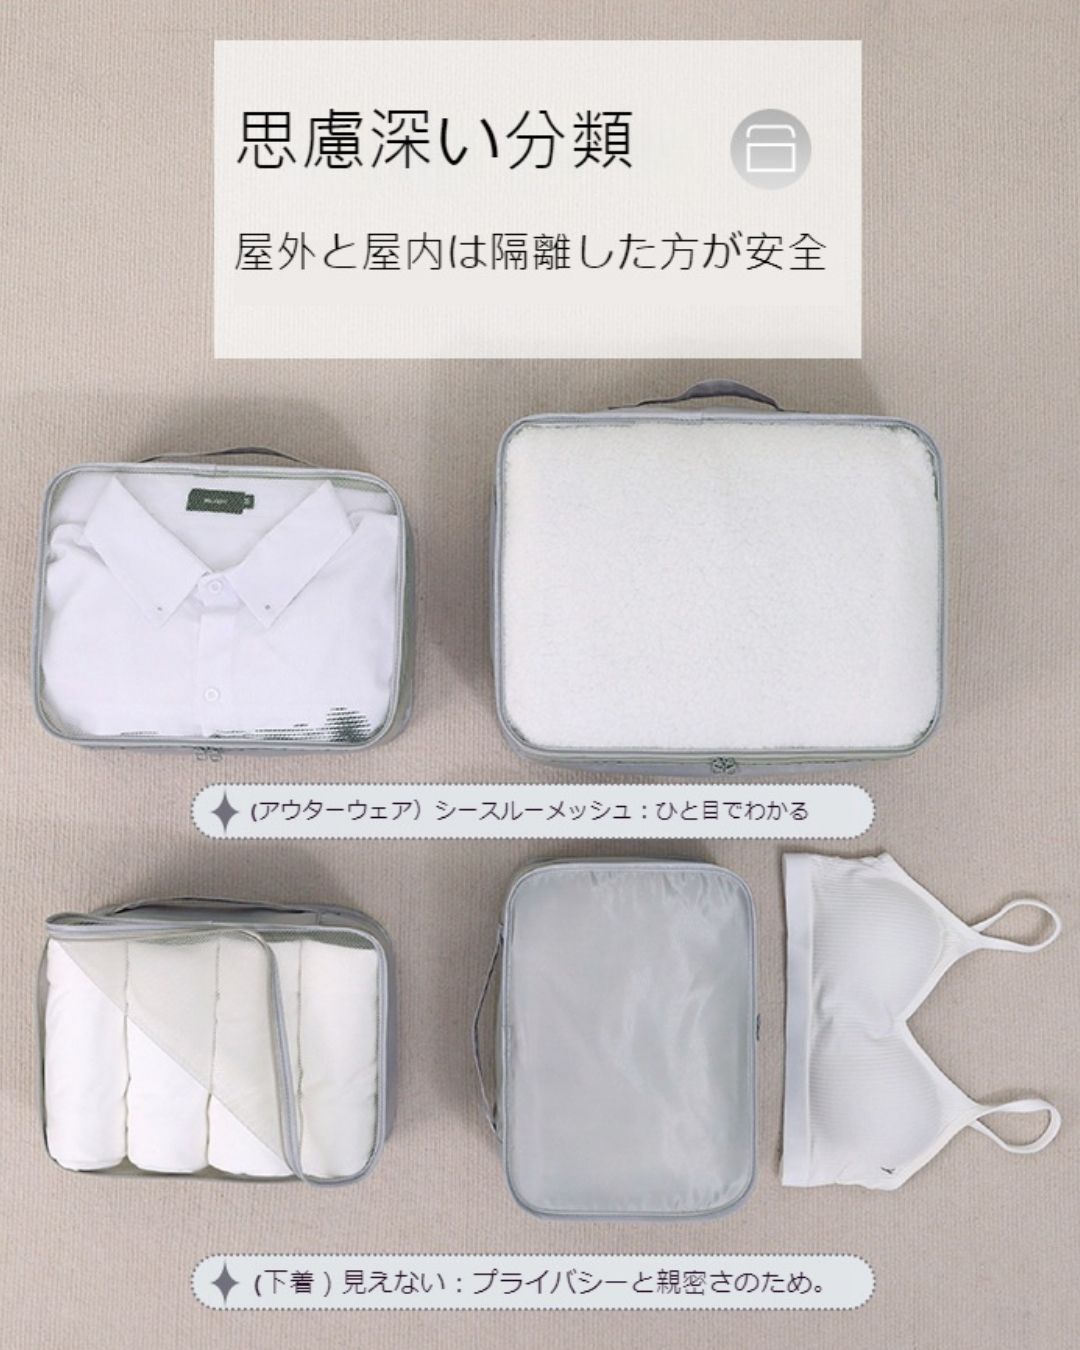 Seven-piece travel storage bag